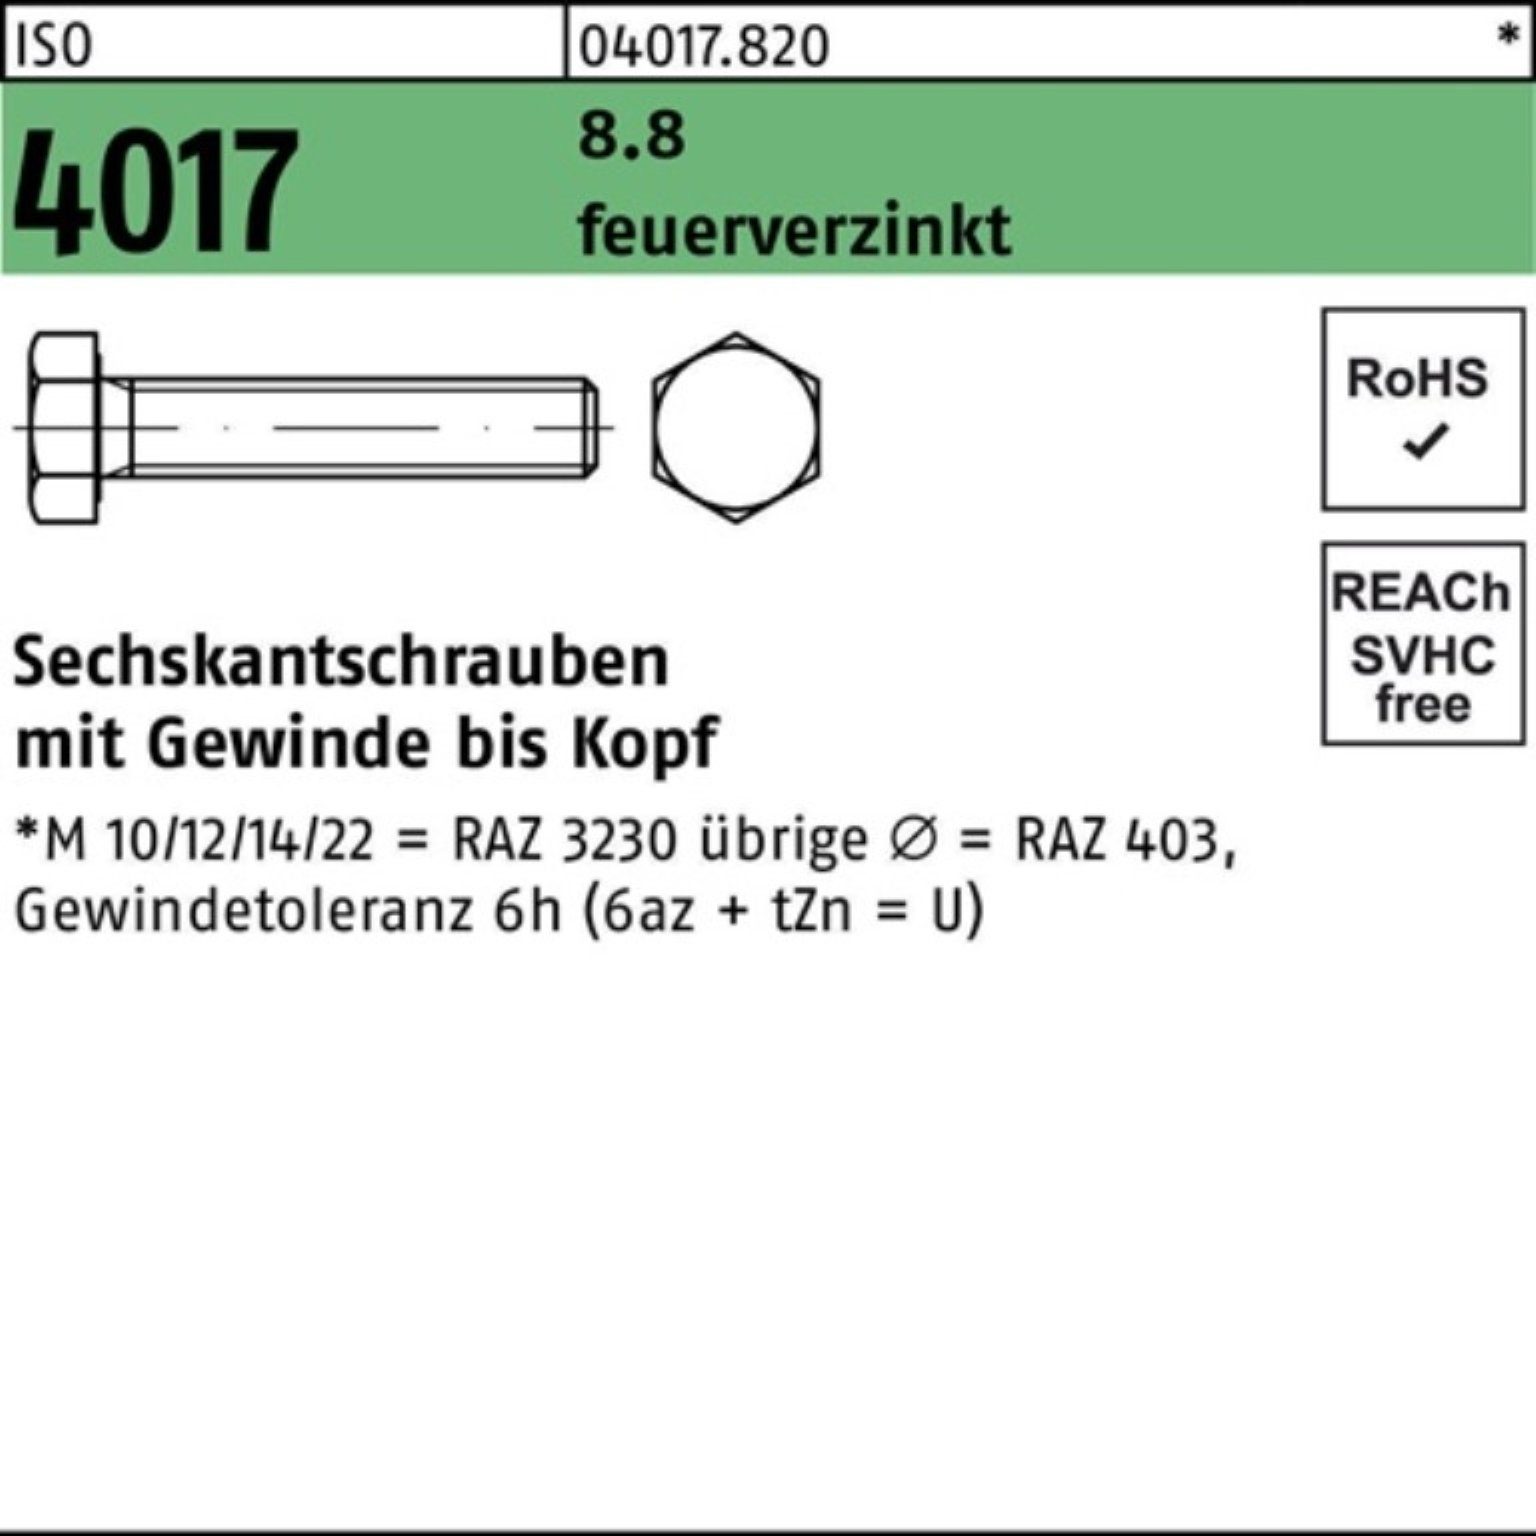 Bufab Sechskantschraube 100er Pack Sechskantschraube ISO 4017 VG M20x 140 8.8 feuerverz. 1 St